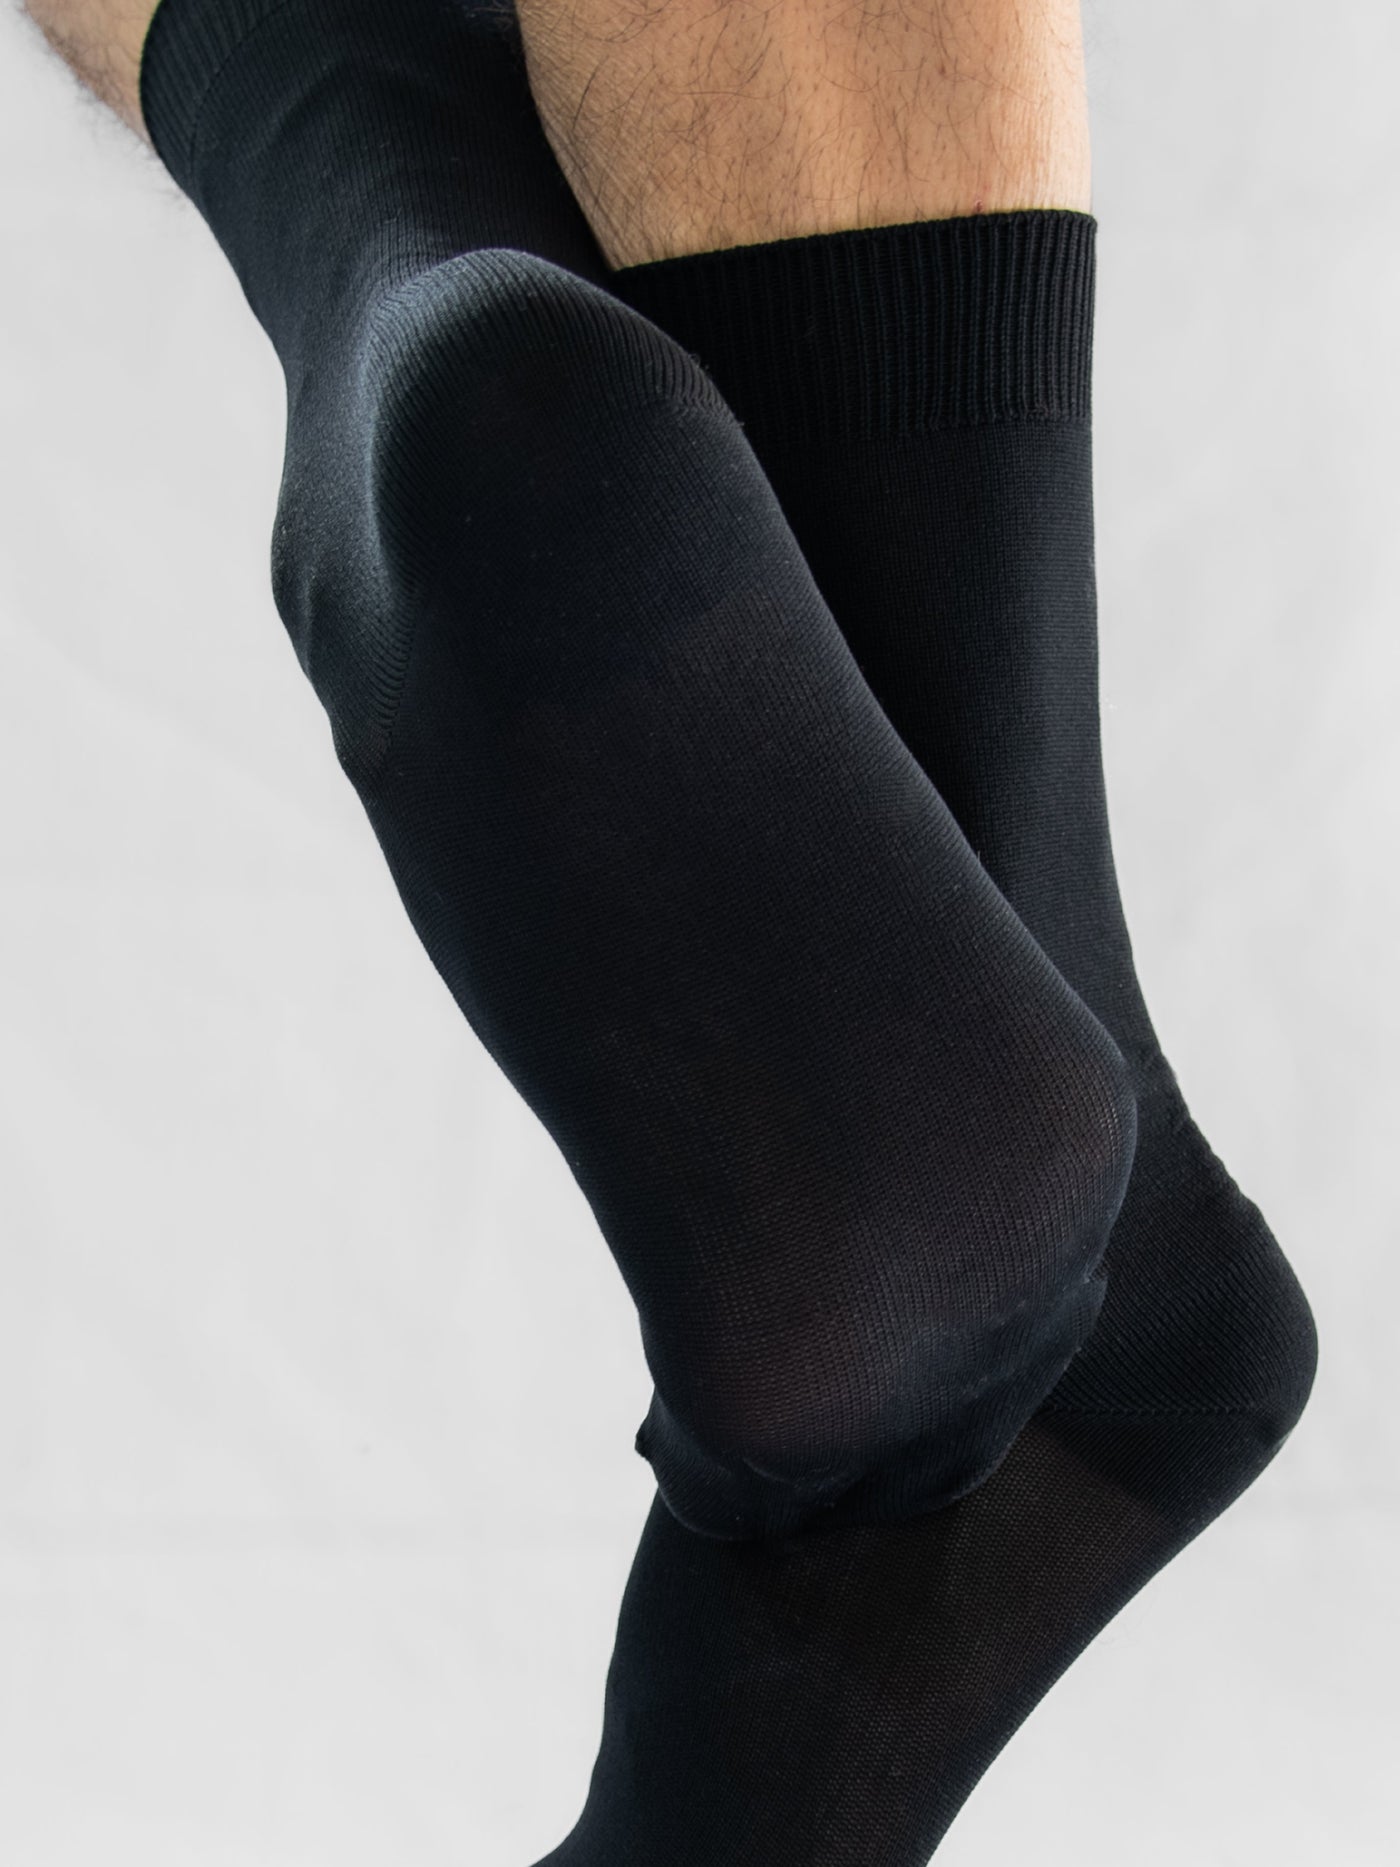 Men's and Boys' Ballet Socks